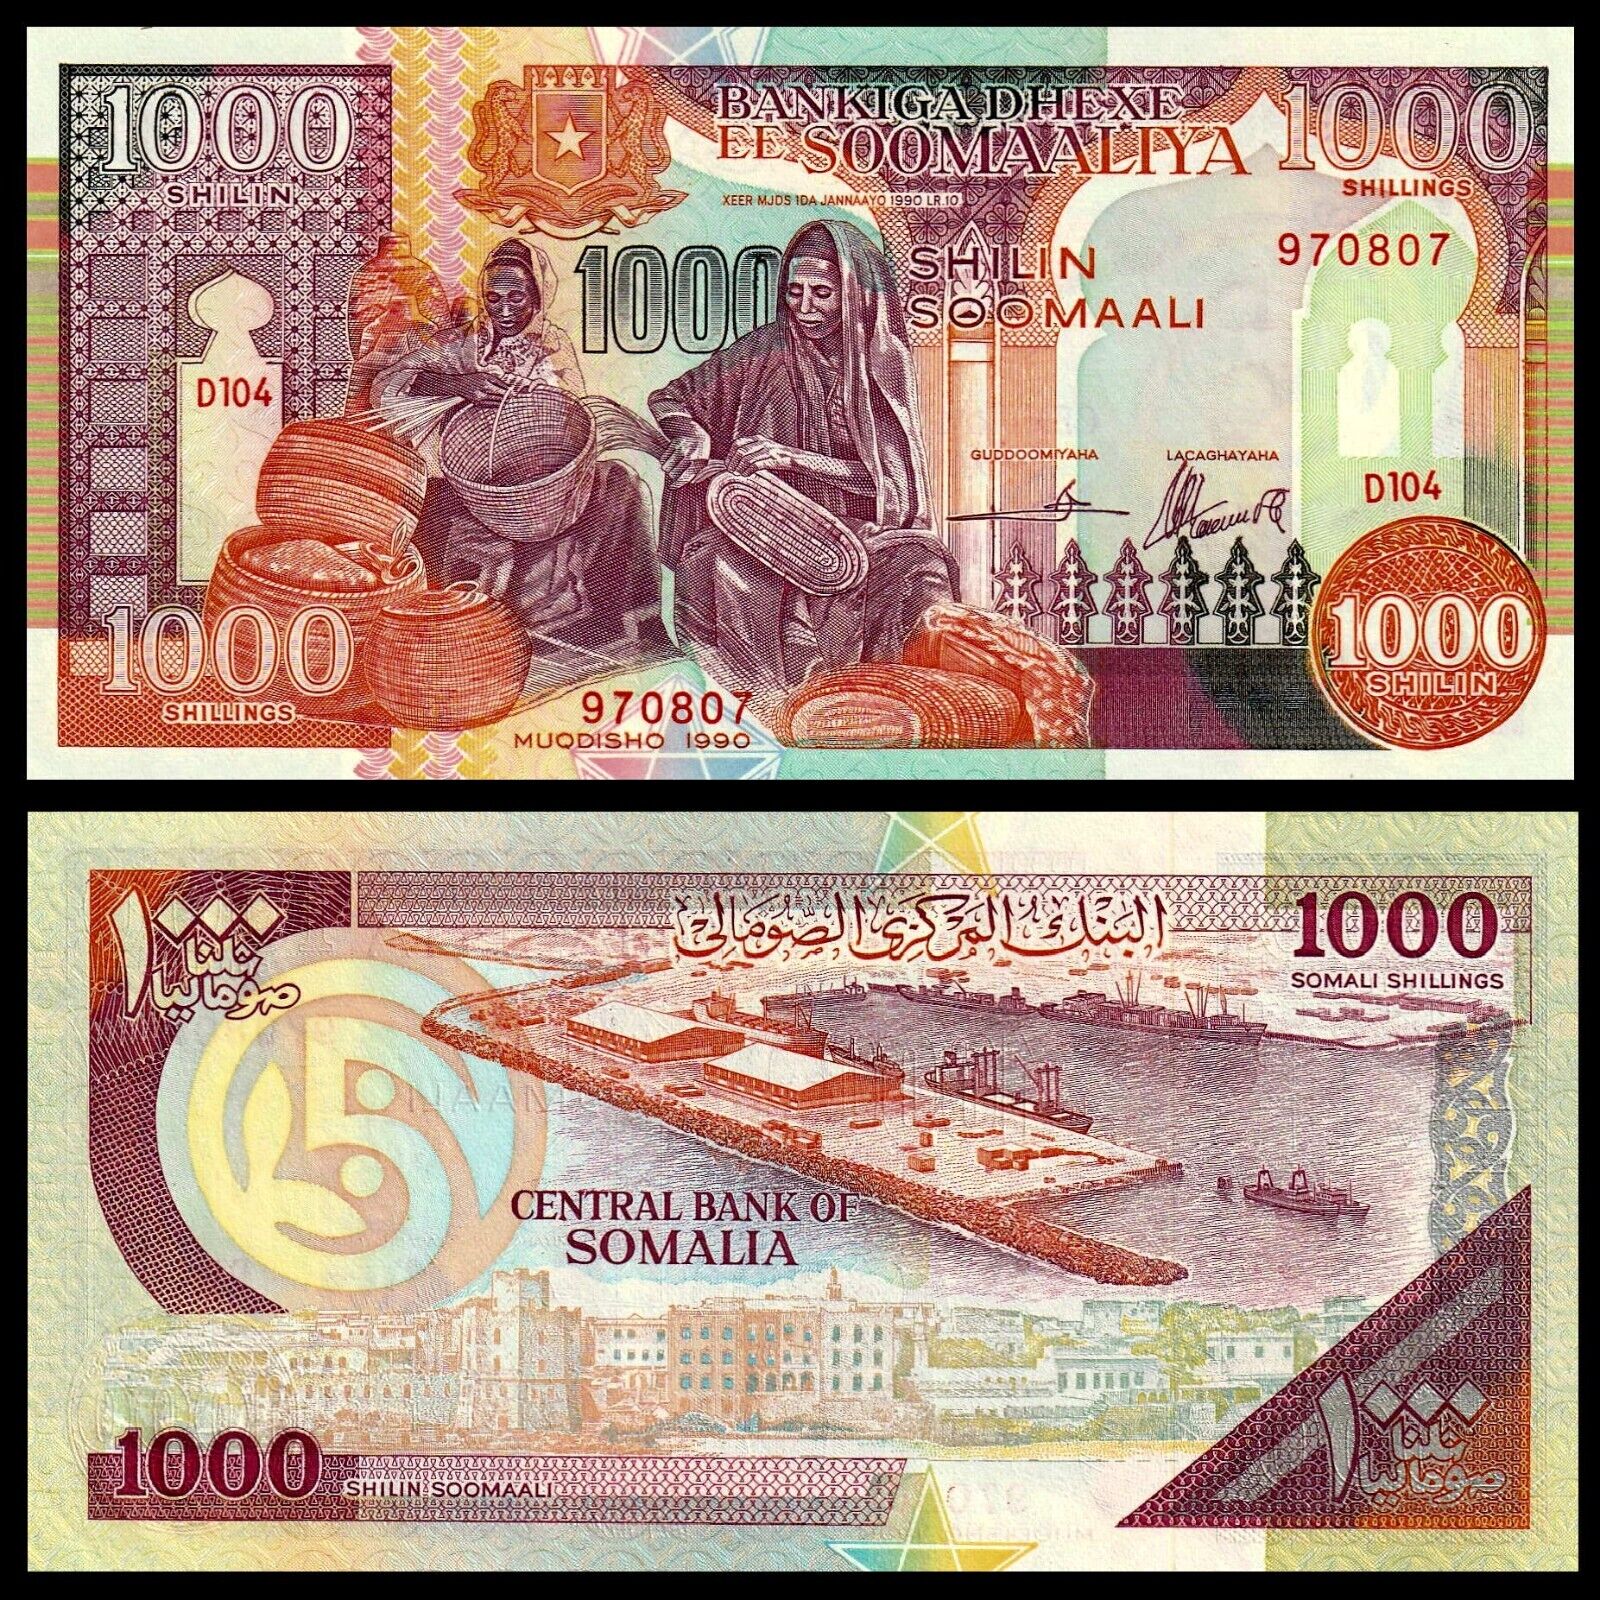 🇸🇴 Somalia, 1000 Shillings, 1990 (2000), P-r10, Puntland Region, Unc